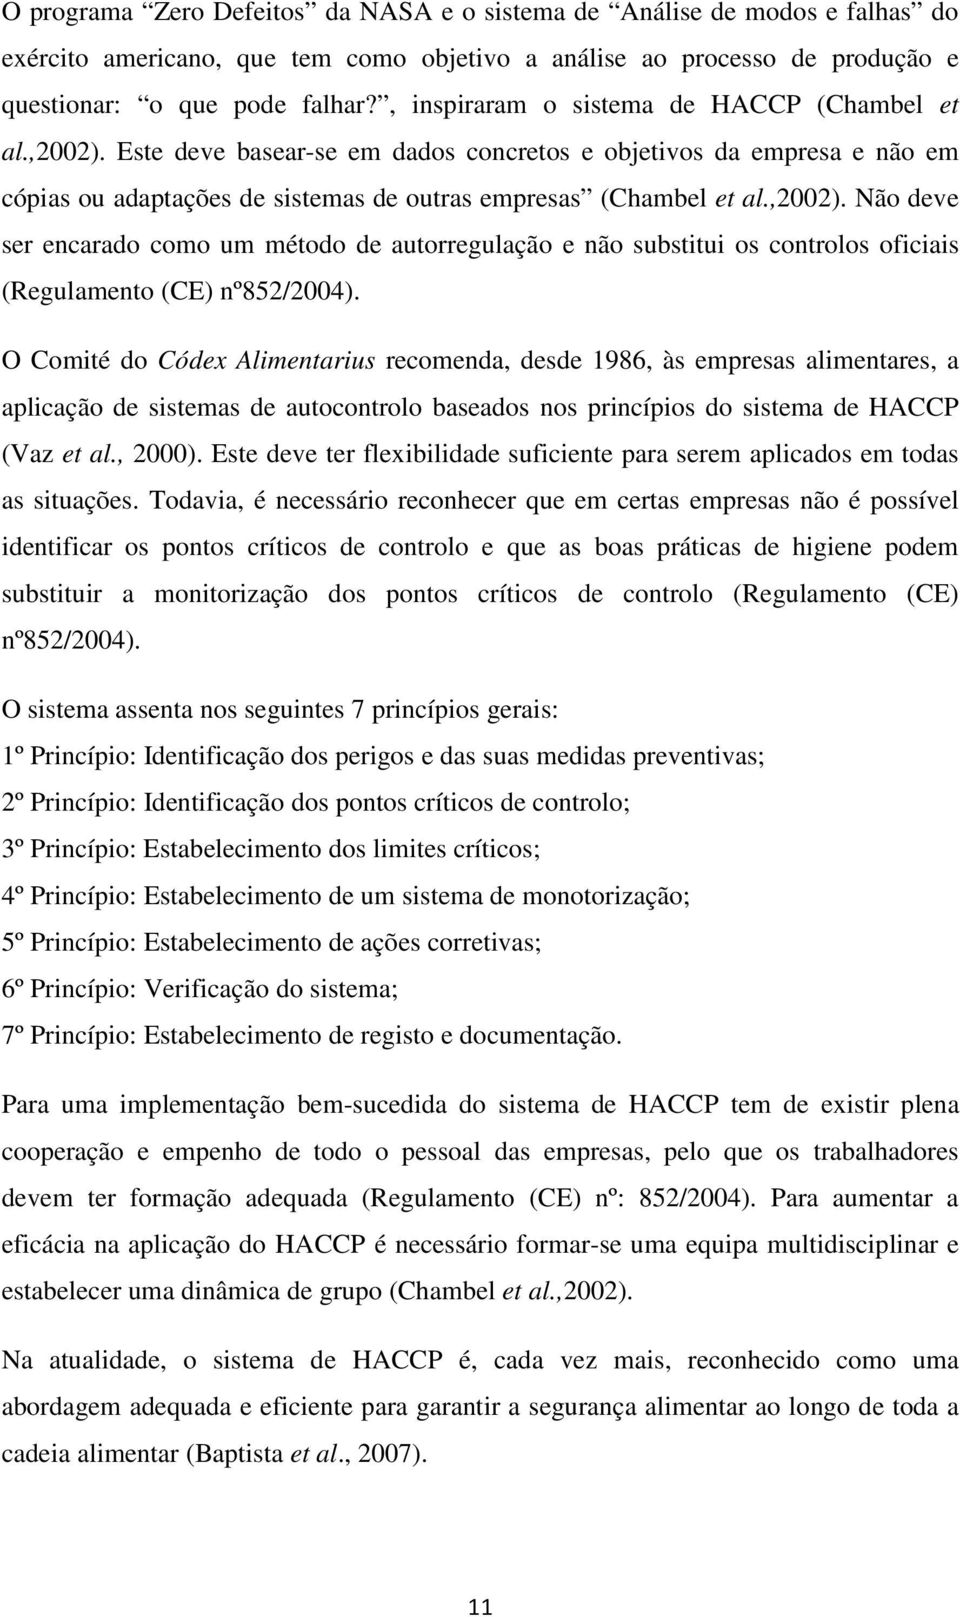 O Comité do Códex Alimentarius recomenda, desde 1986, às empresas alimentares, a aplicação de sistemas de autocontrolo baseados nos princípios do sistema de HACCP (Vaz et al., 2000).